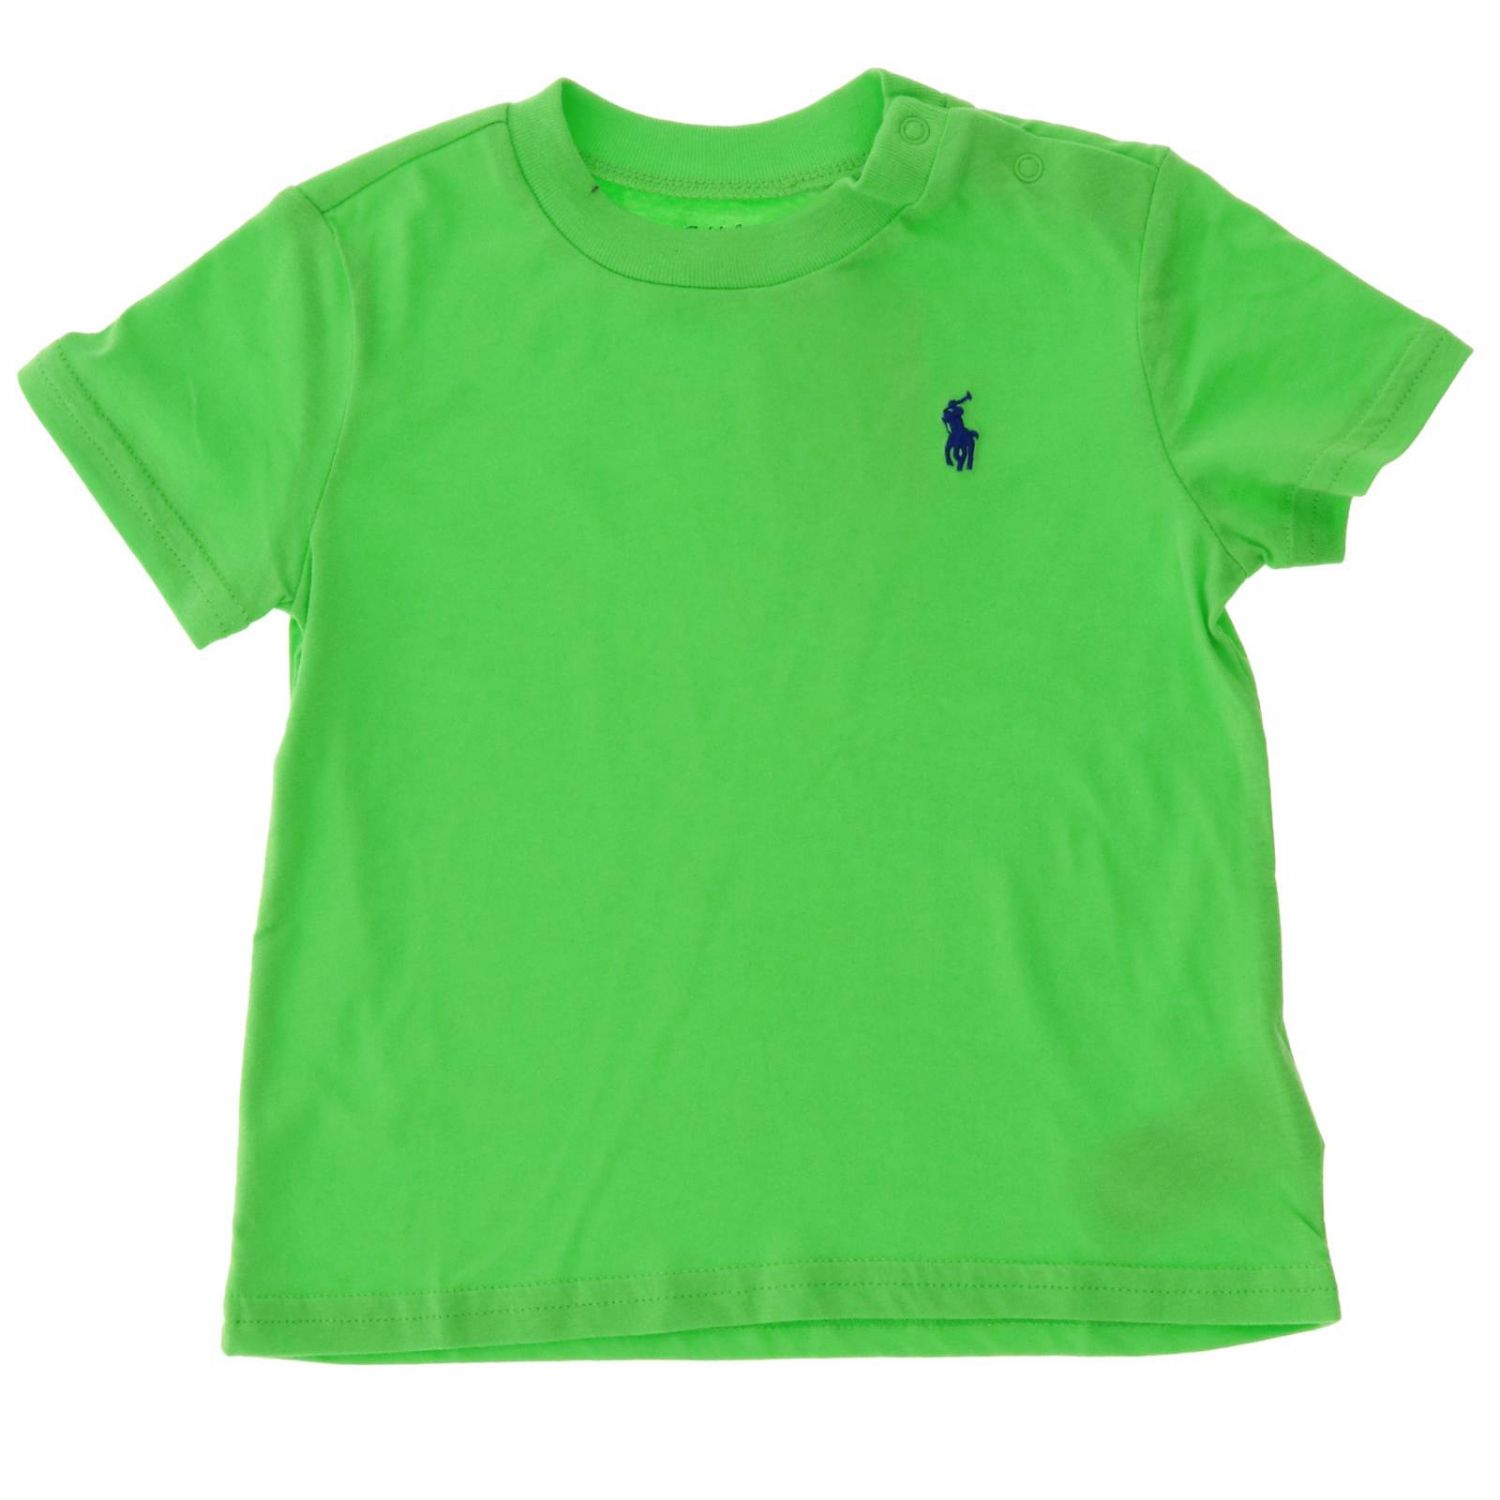 Polo Ralph Lauren Infant Outlet: T-shirt kids - Green | T-Shirt Polo ...